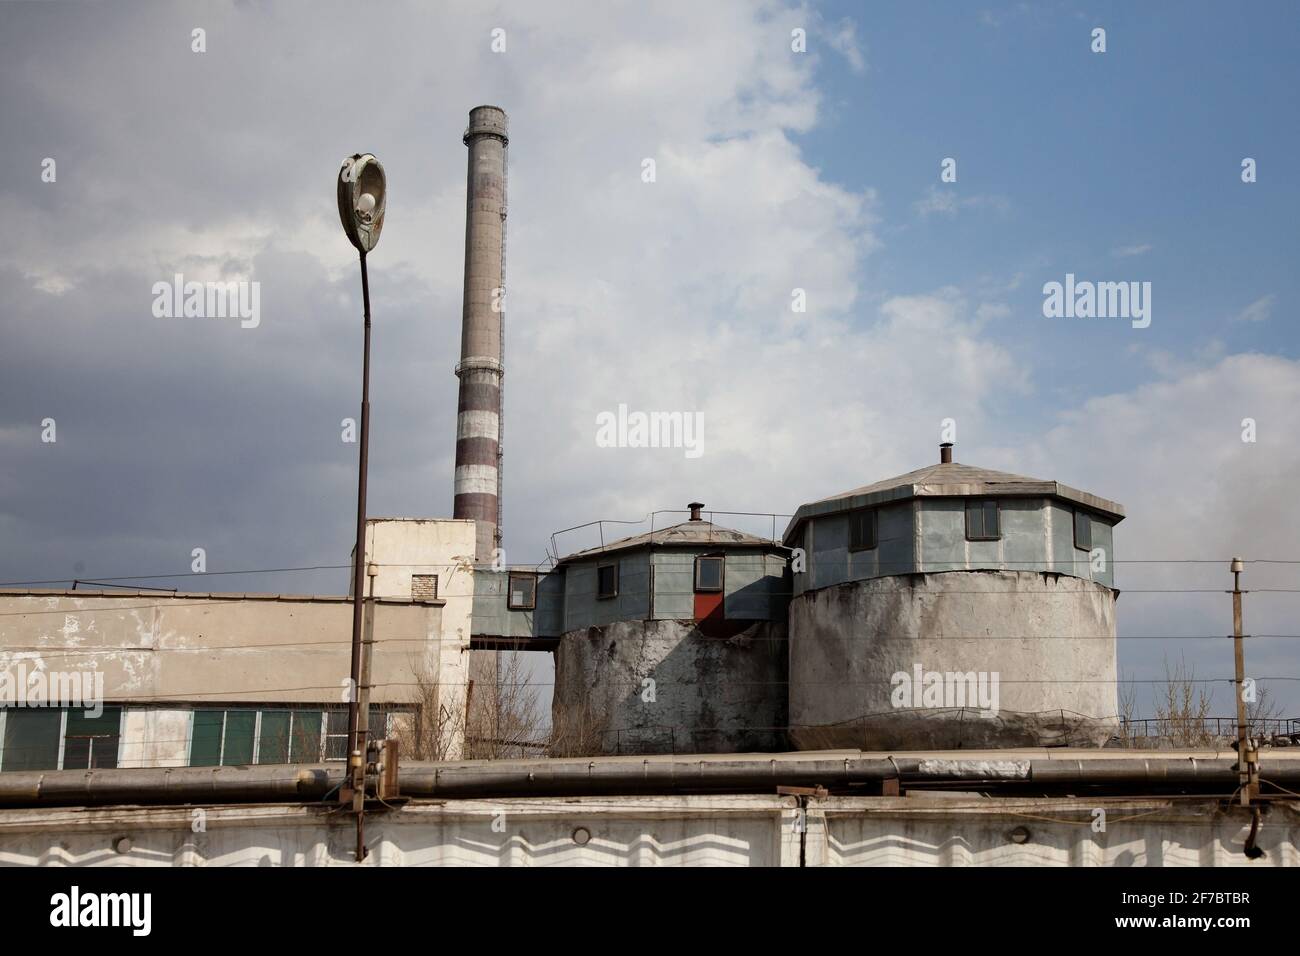 Veraltete sowjetische Bergbau- und Verarbeitungsfabrik. Grauer Rauchstapel aus Beton und zwei runde Silos. Blauer Himmel mit grauen Wolken. Stockfoto